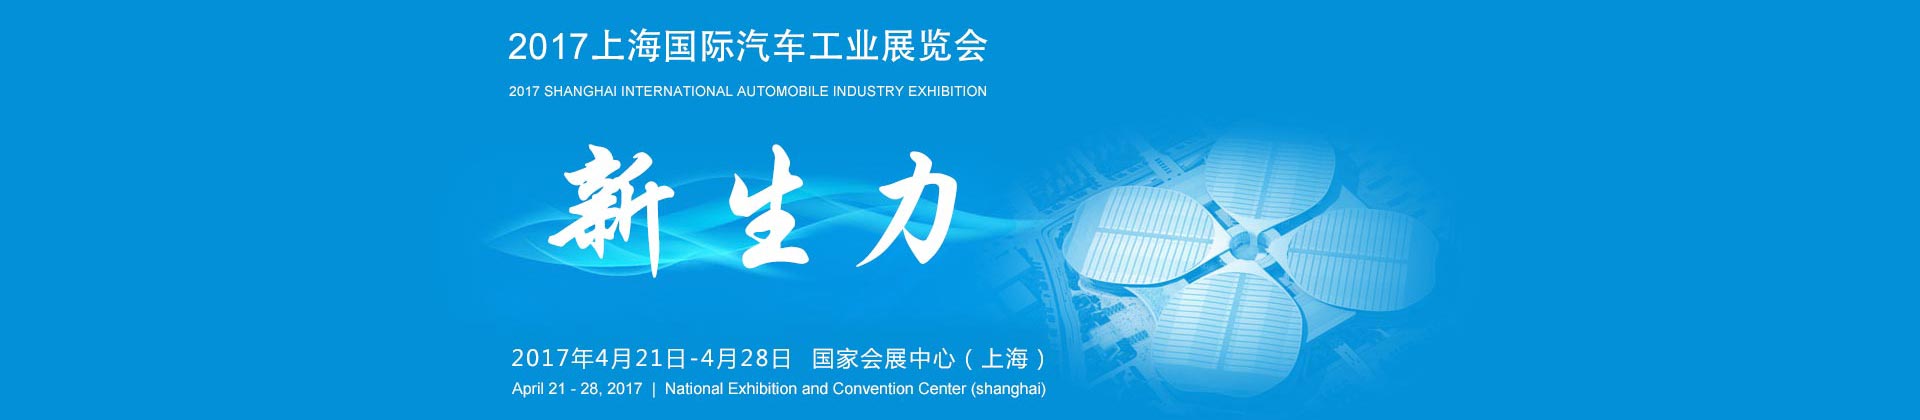 【视频音频图文直播】2017上海国际汽车展